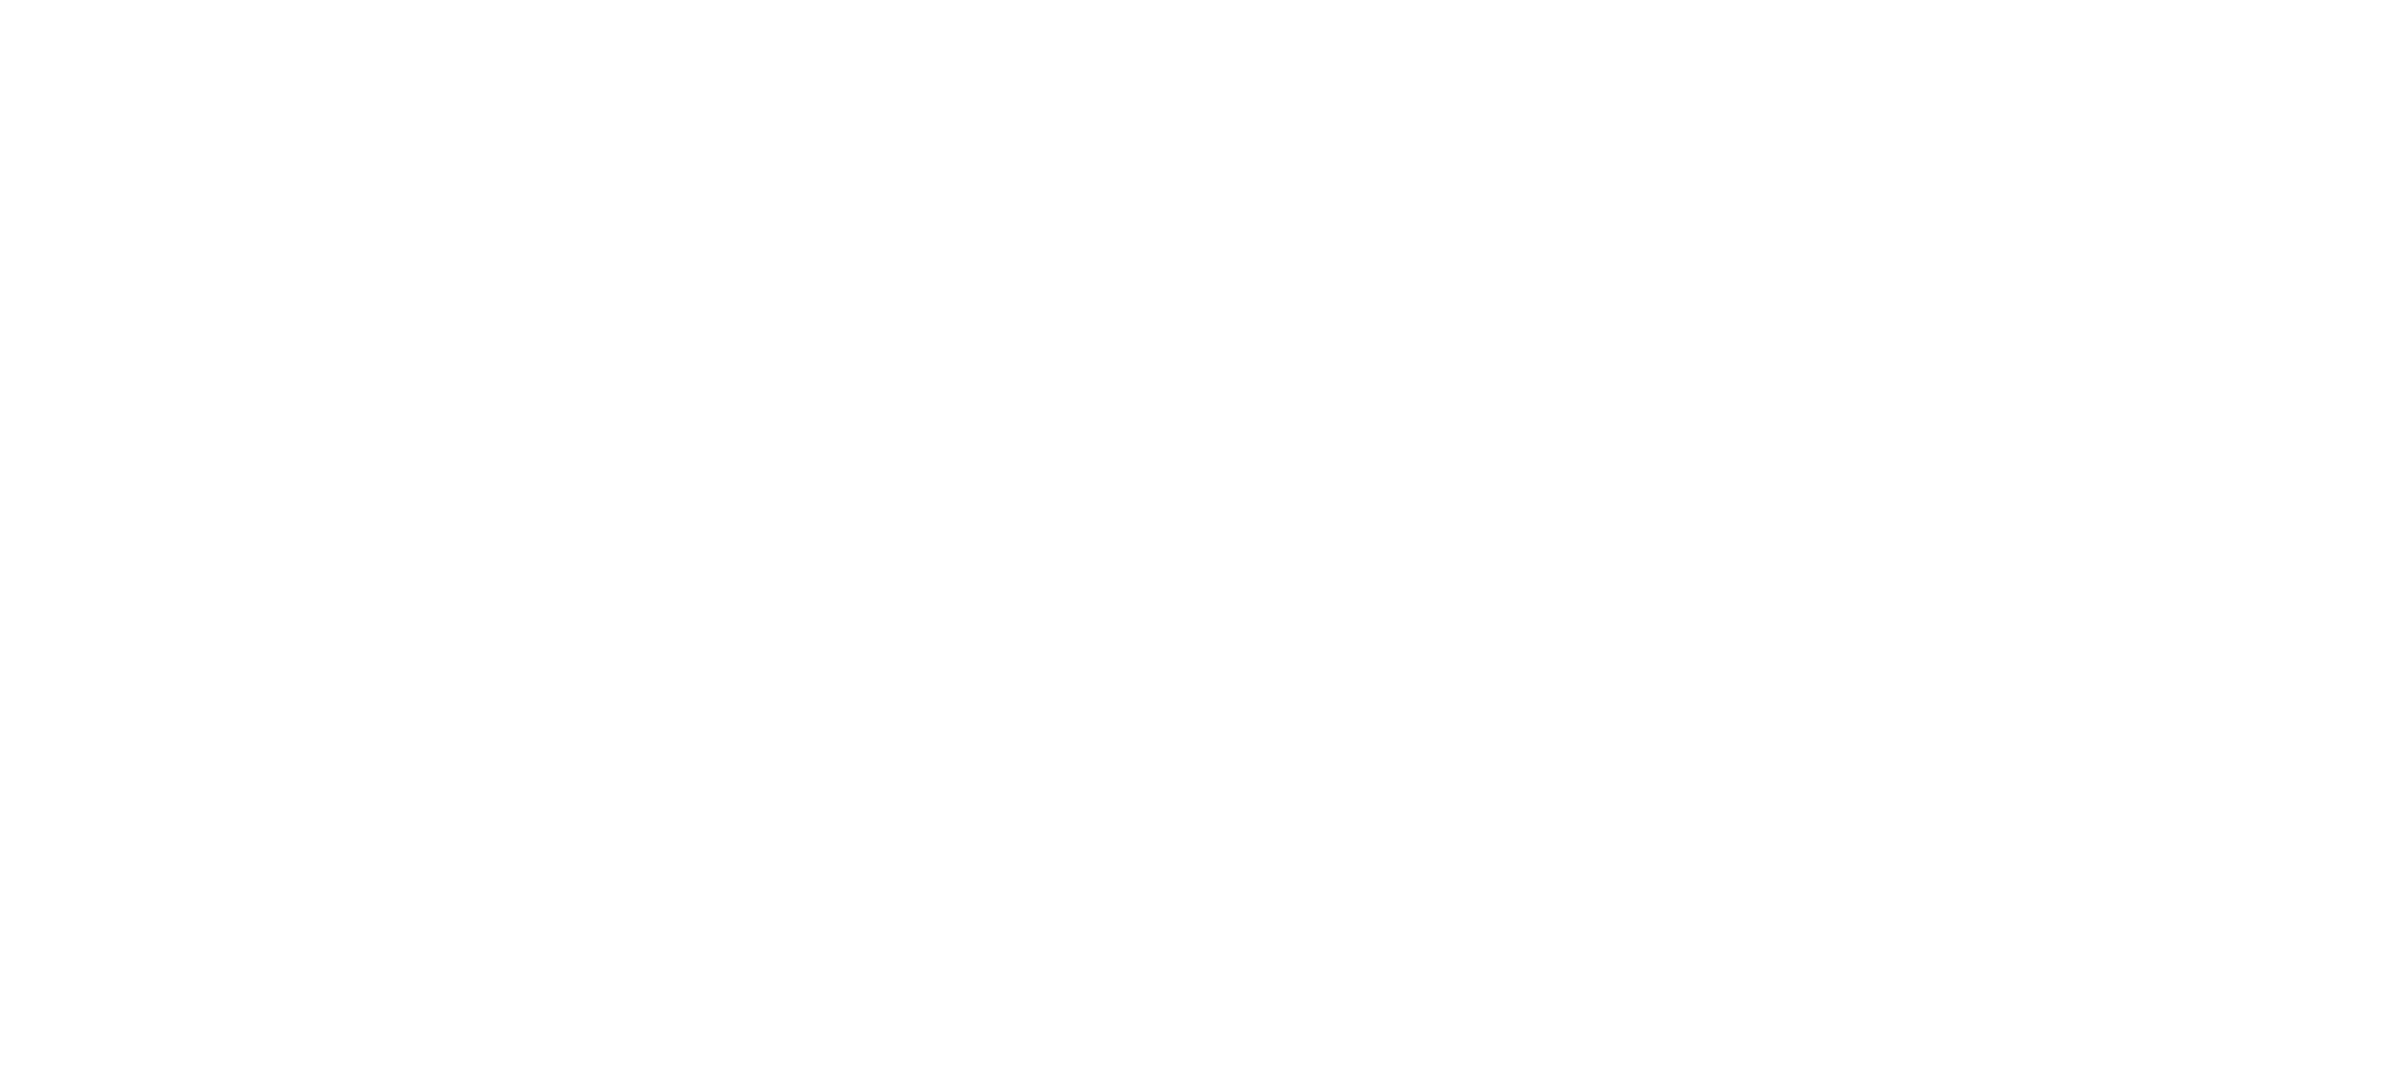 JOHN PROCTOR IS THE VILLAIN